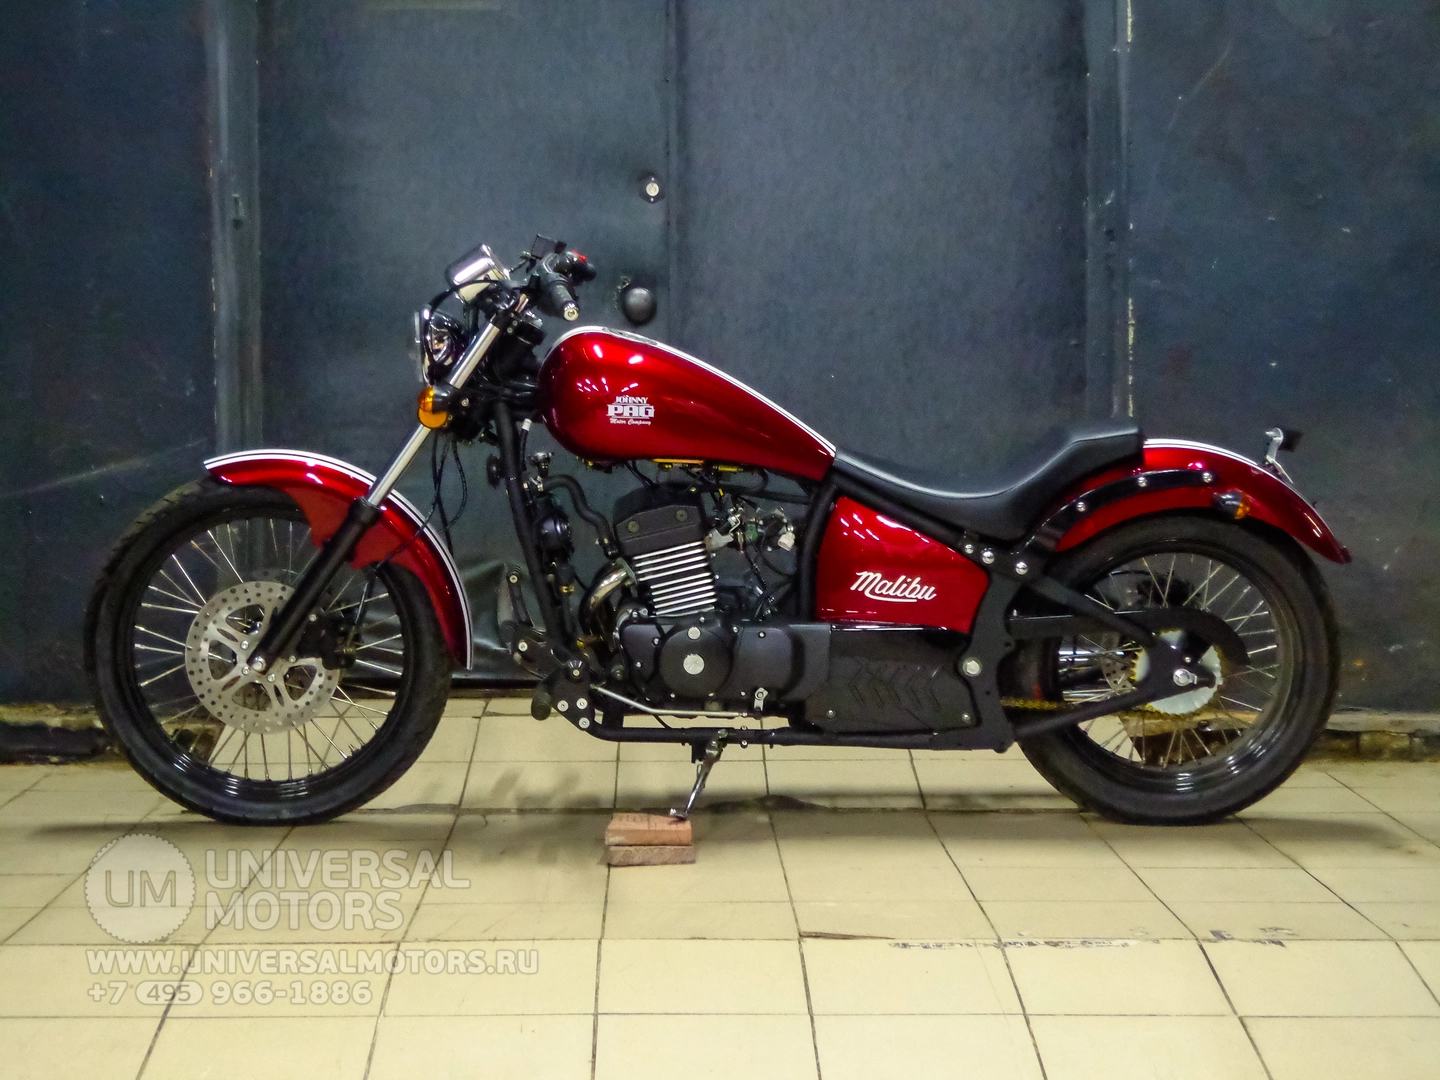 Мотоцикл Johnny Pag Malibu 320i, 15410923352899879090